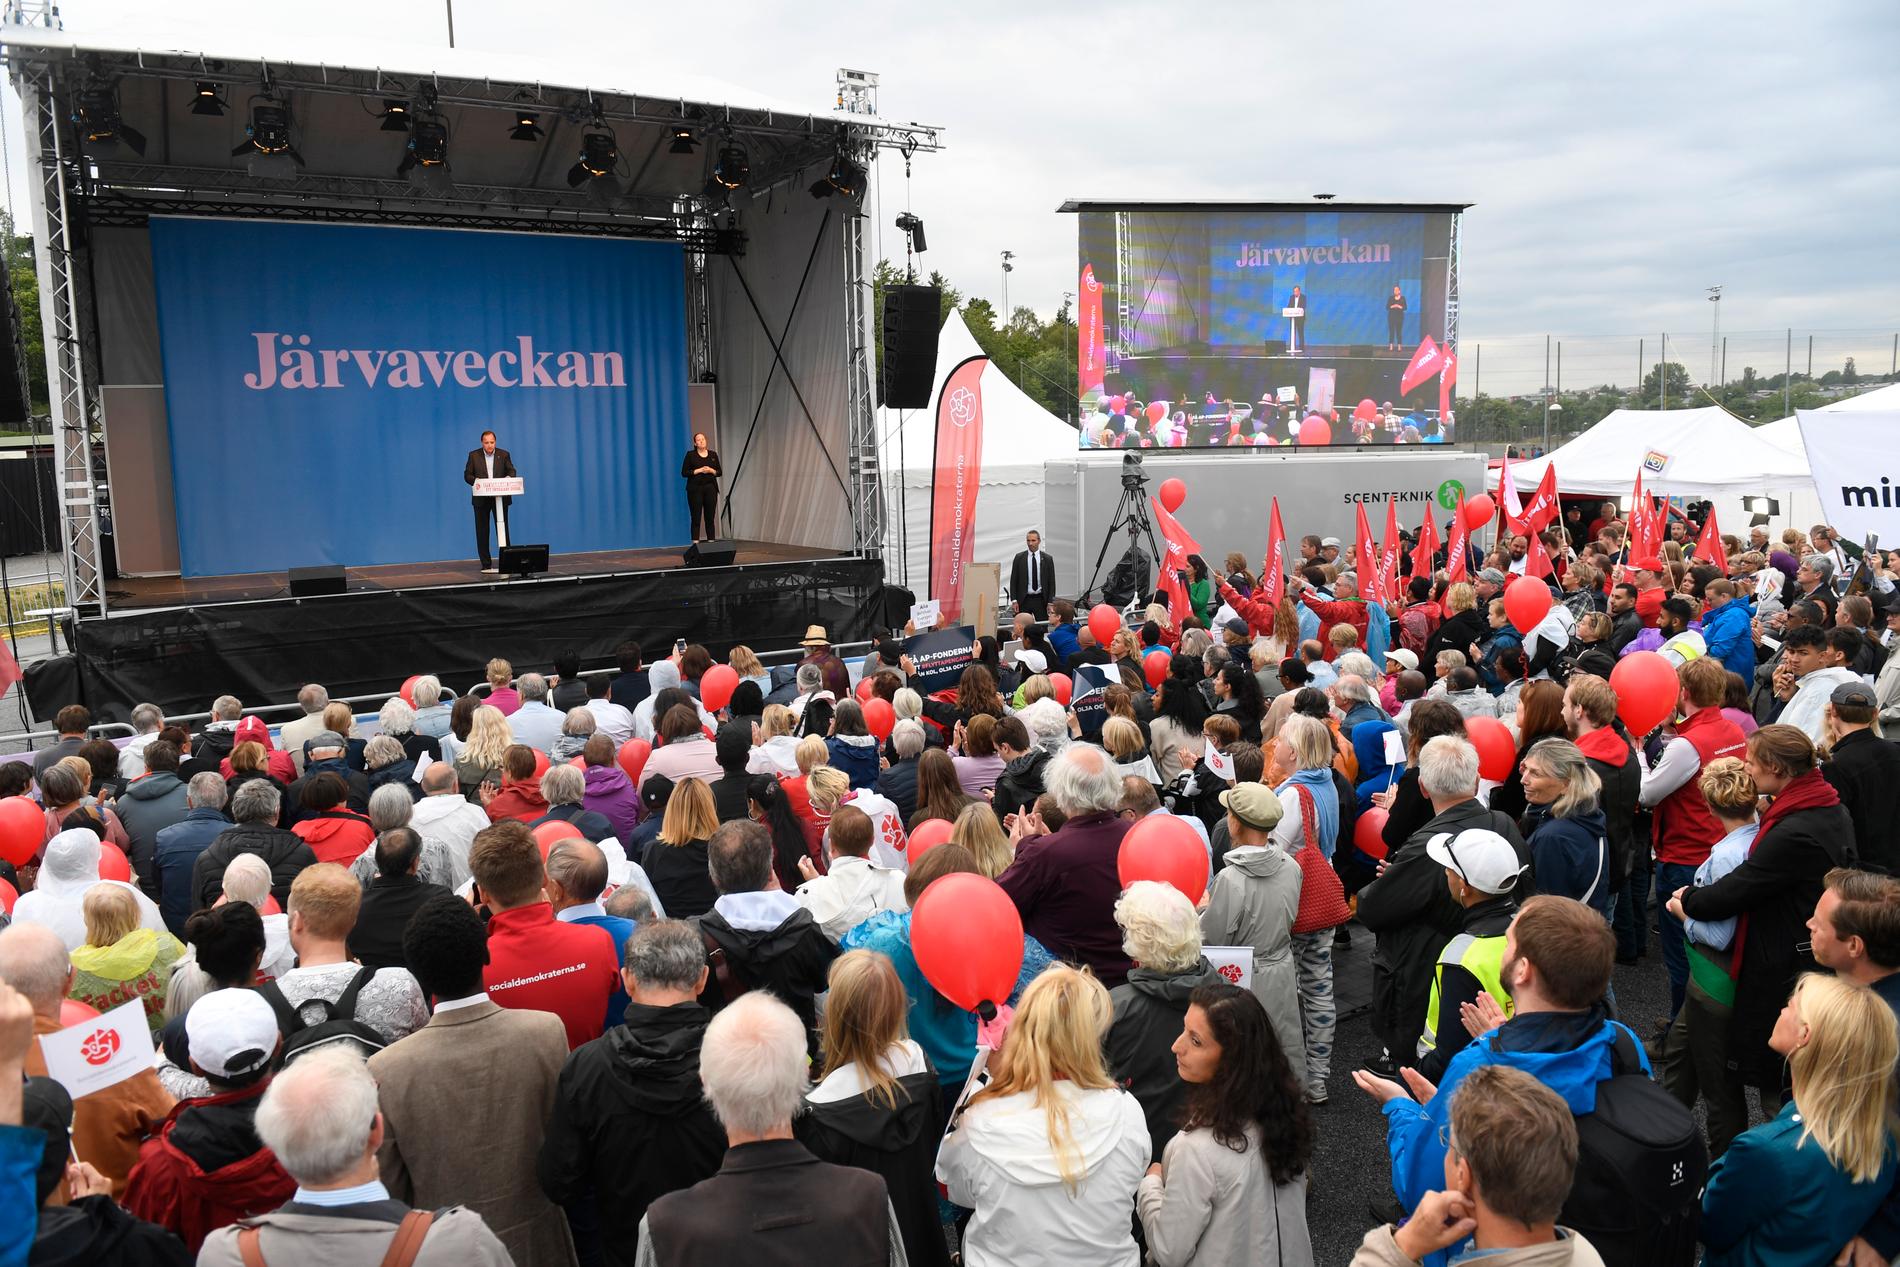 Socialdemokraternas partiledare och statsminister Stefan Löfven talar under den sista dagen av politikerveckan i Järva.